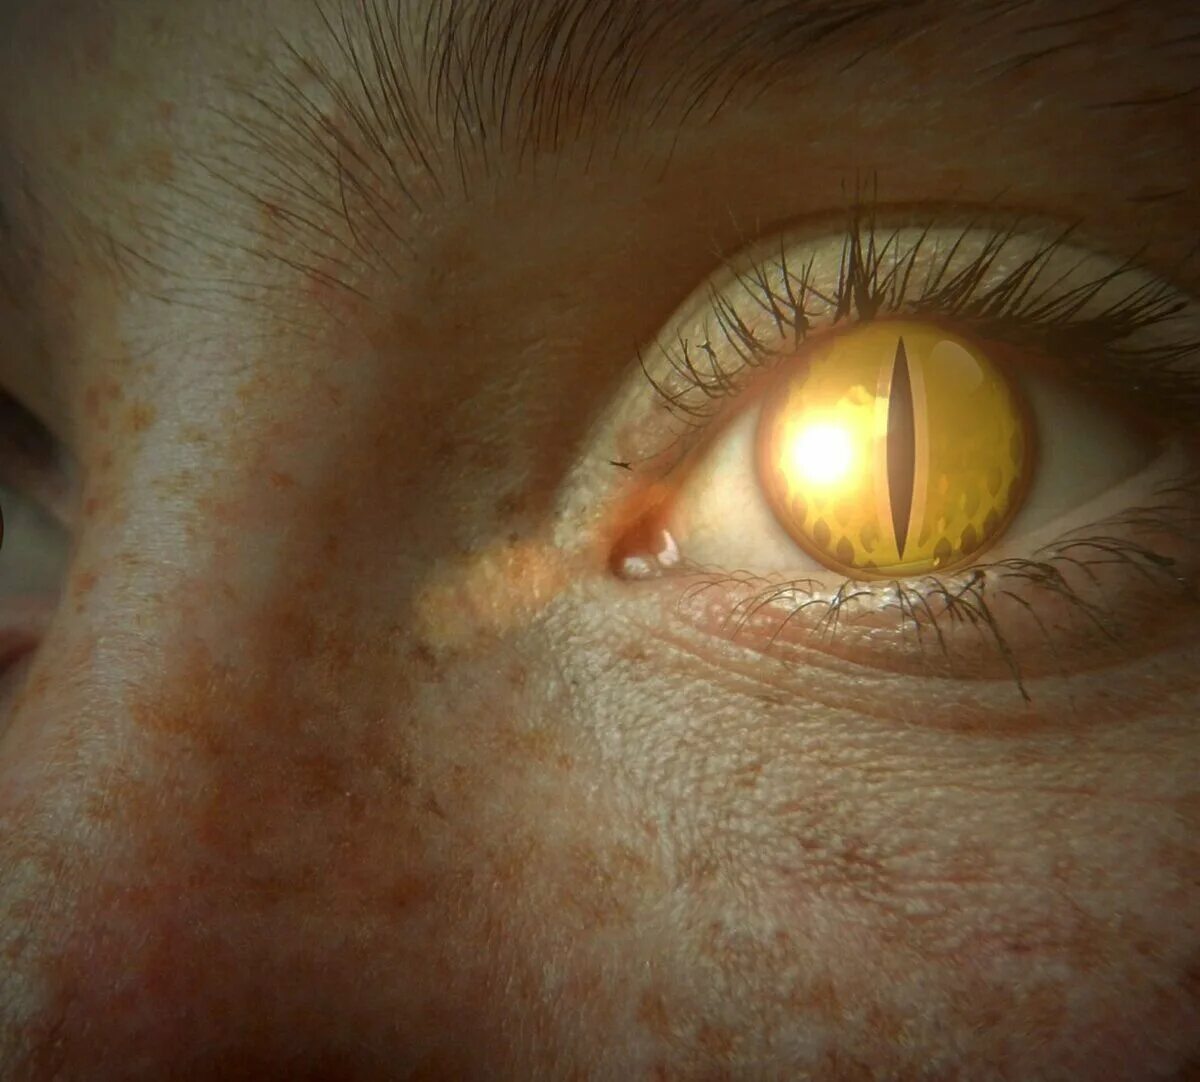 Желтый глаз 8. Желтые глаза. Глаз человека. Желто янтарные глаза. Желтые глаза с вертикальным зрачком.